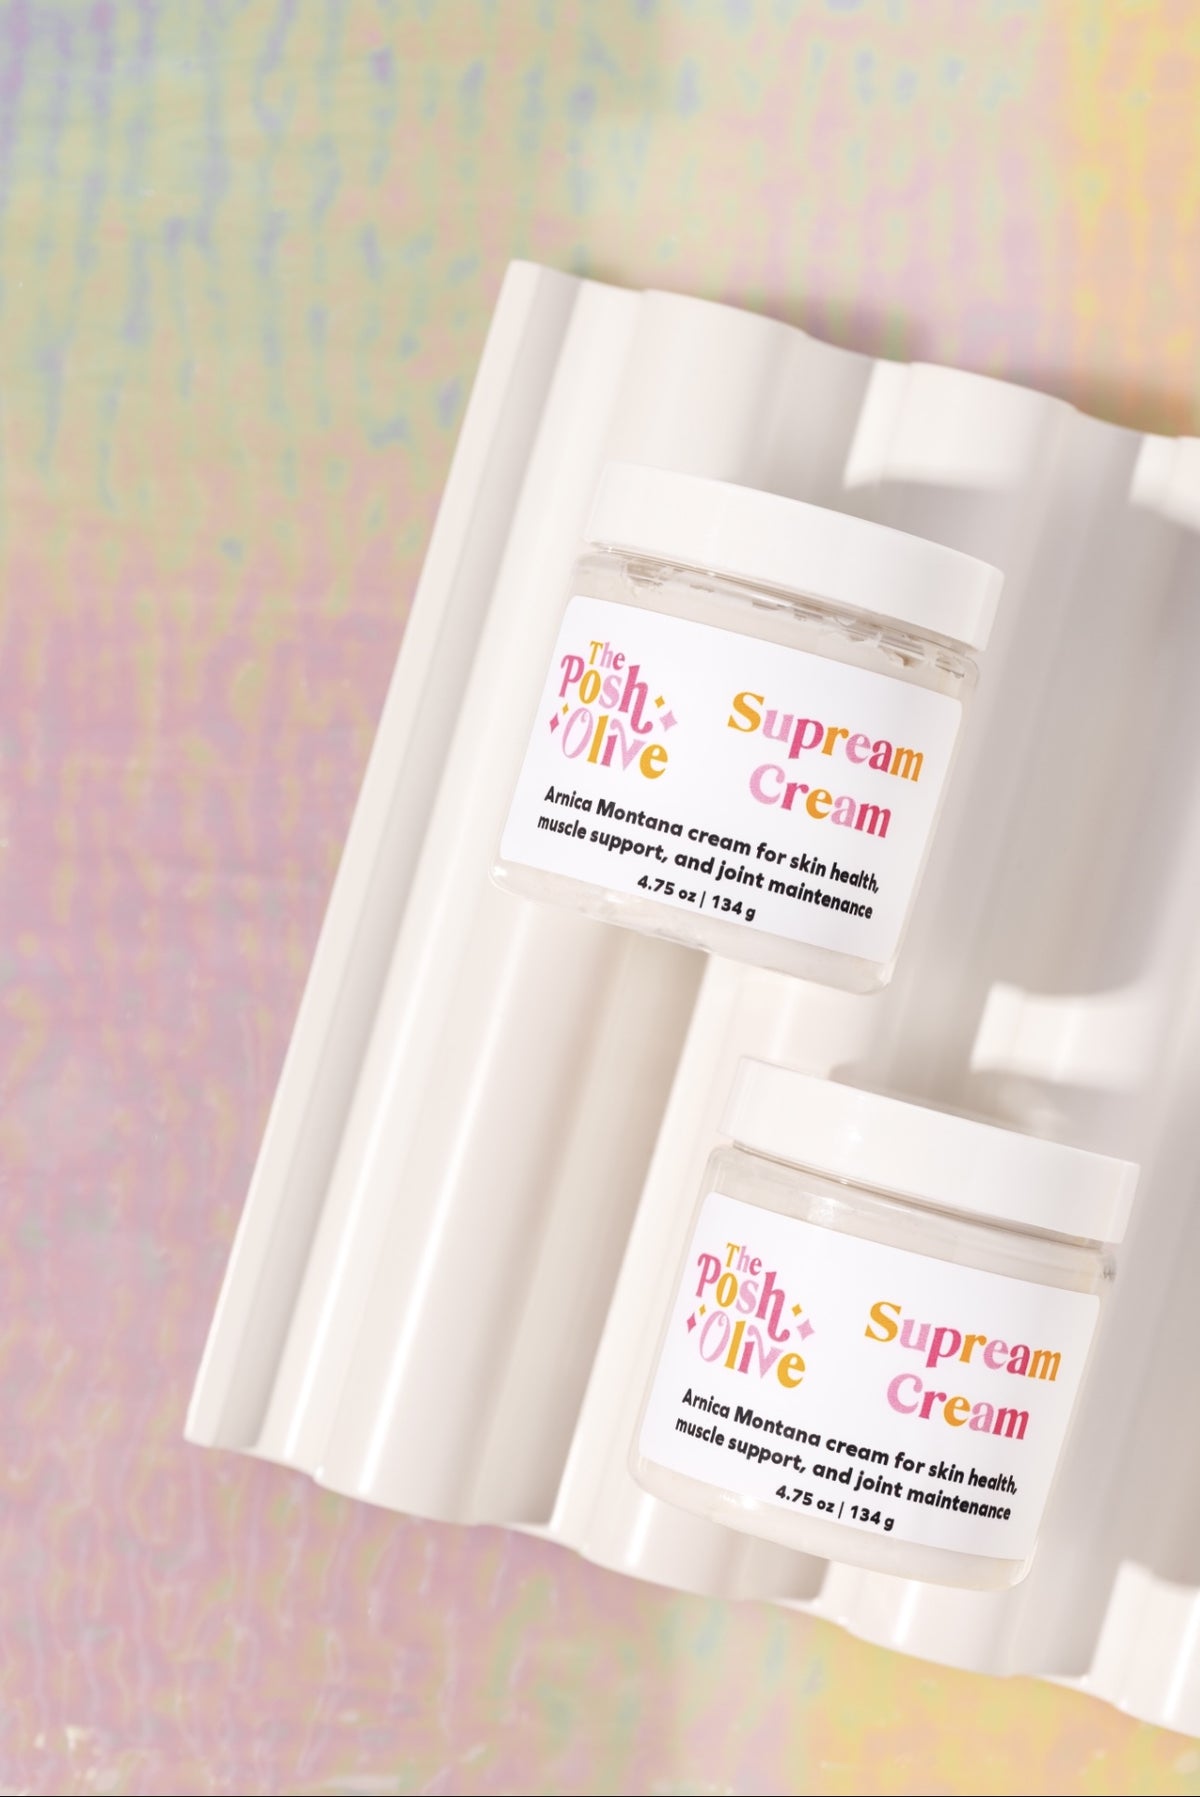 Supreme Cream